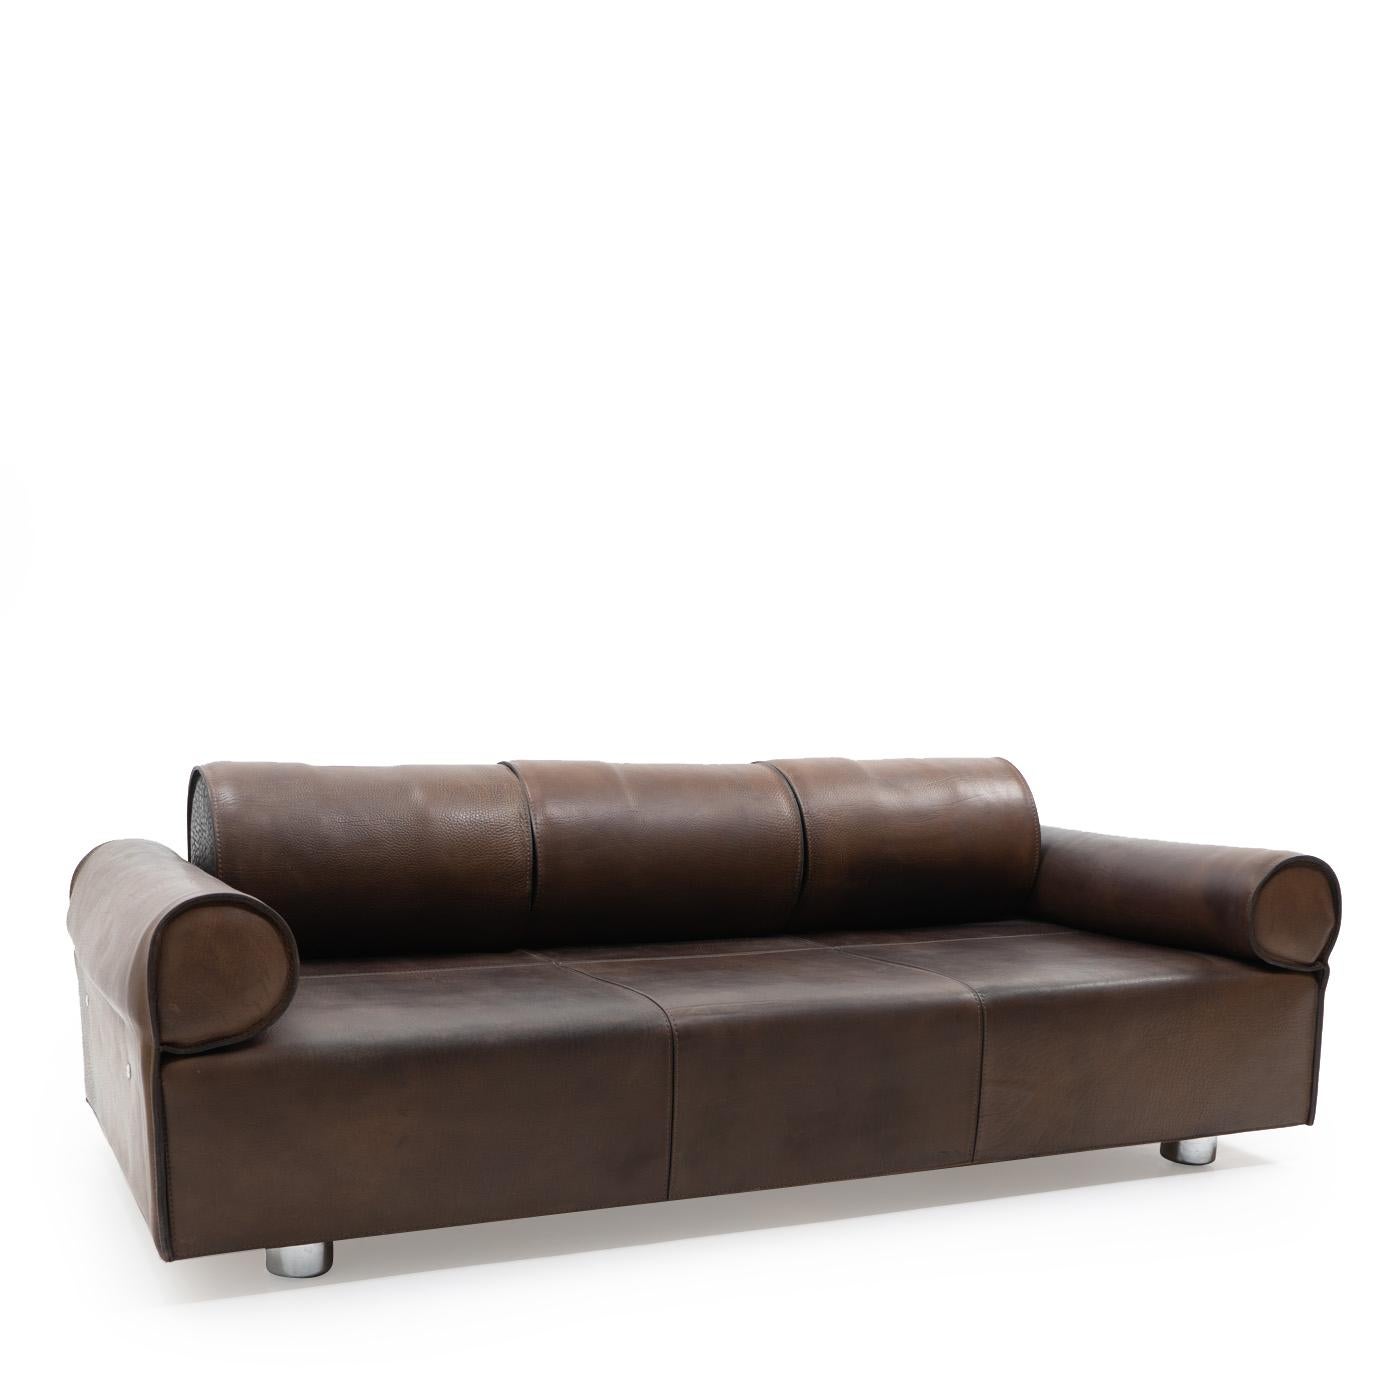 Ein außergewöhnliches Dreisitzer-Sofa aus dickem und sehr schwerem Büffelleder; das gealterte Leder weist eine wunderbare dunkelbraune Patina auf und befindet sich in einem ausgezeichneten Zustand, mit einigen Verfärbungen und normalen